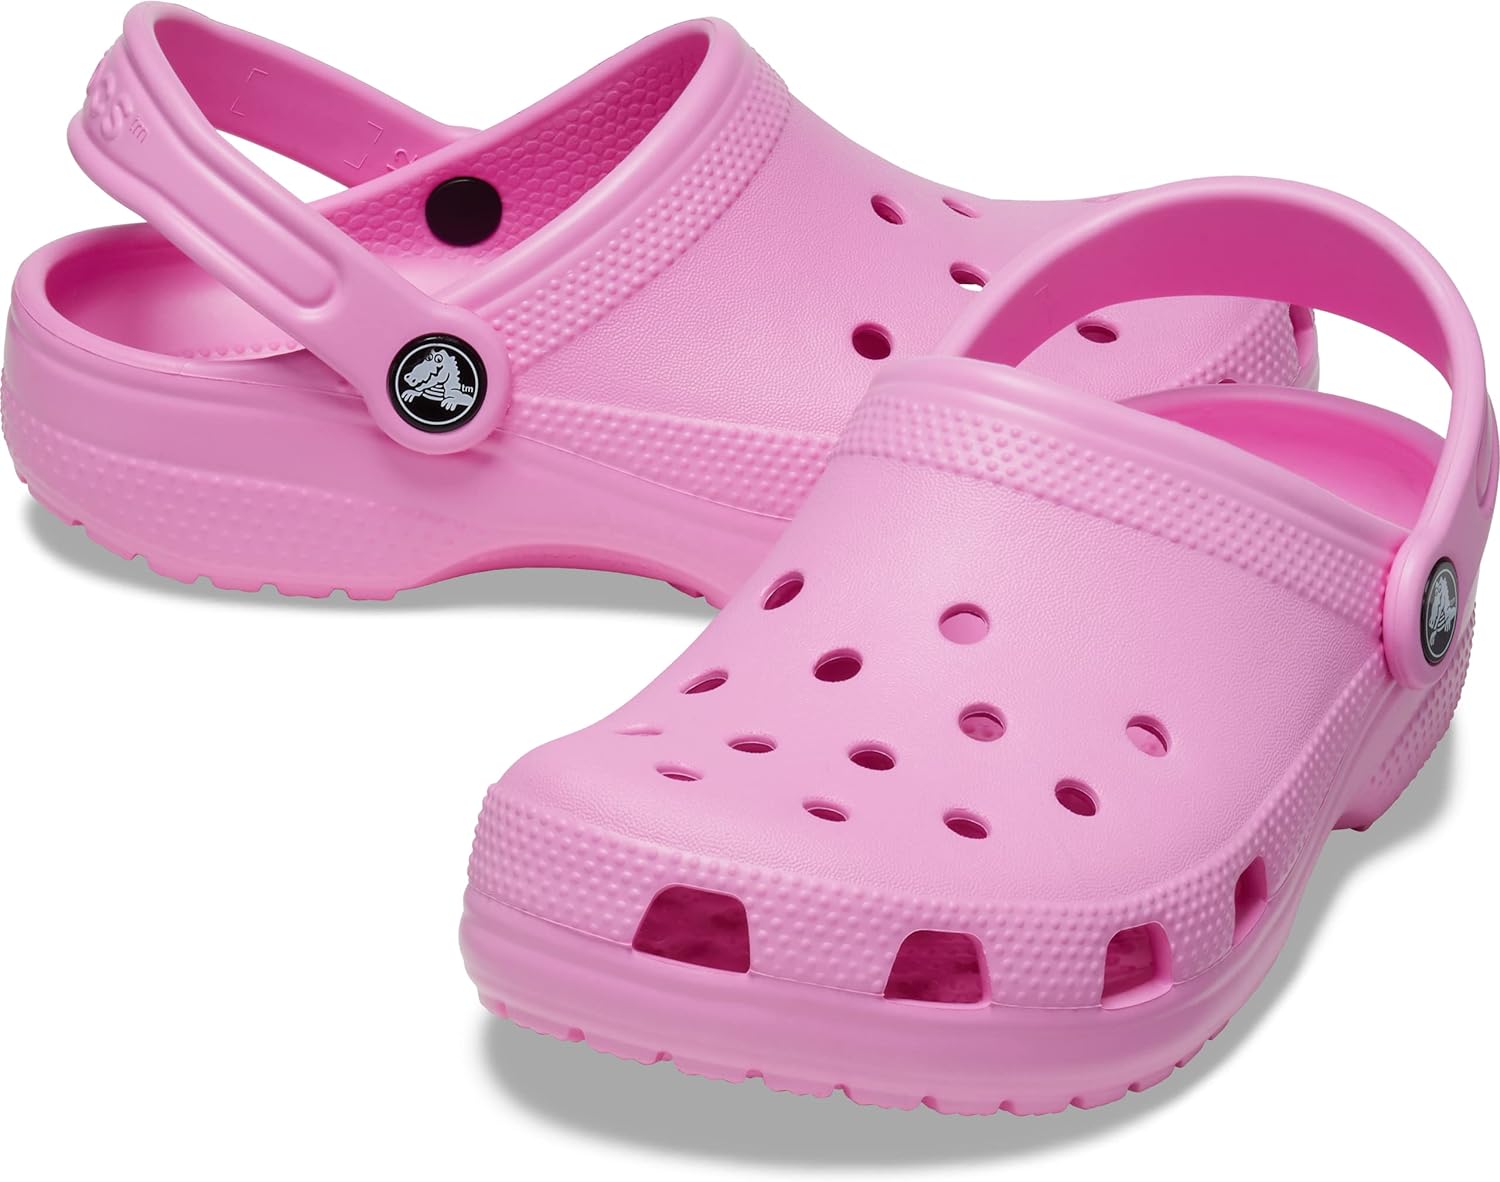 Crocs Classic unisex-child Clogs